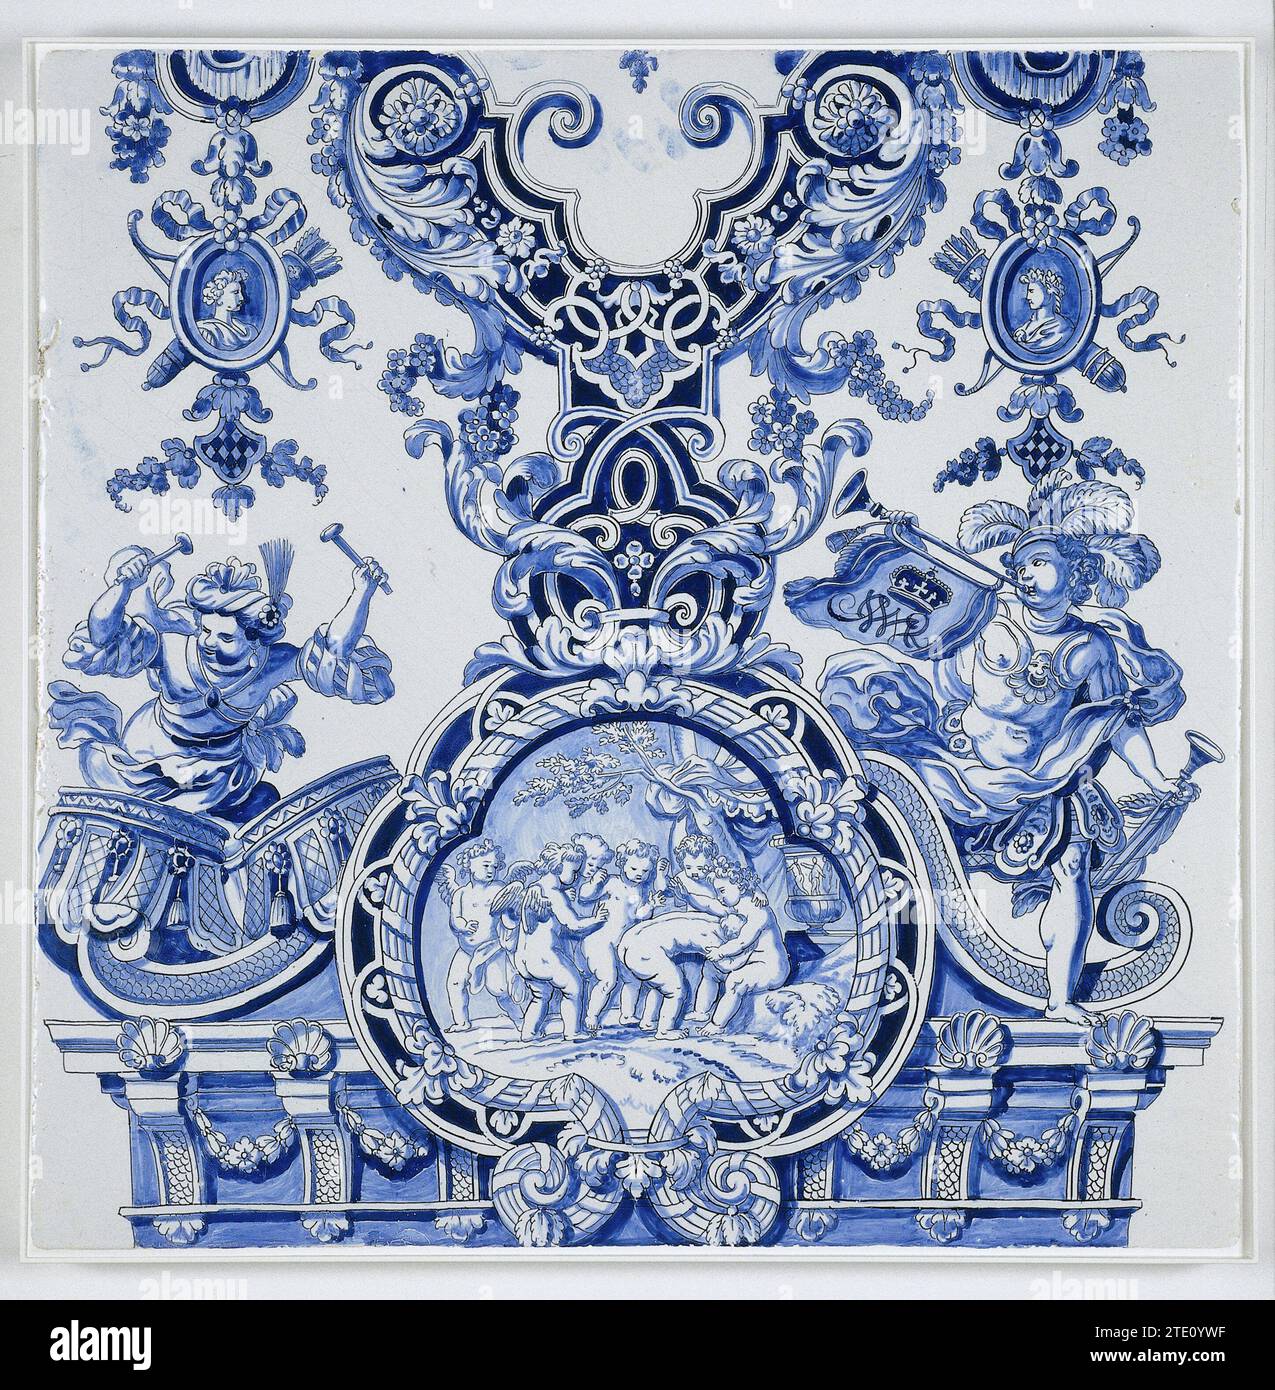 Drei Tafeln aus einer Säule, de Grieksche A, nach Adrianus Kocx, ca. 1690 Fliesen mit einem blau bemalten Medaillon mit spielenden Cherubs. Auf beiden Seiten ein Trommelschlachter und ein Trompetengebläse. Oben auf der Fliese ein symmetrisches Ornament aus Voluten und Blattreben mit einem Porträt in einem Medaillon auf beiden Seiten. Delfter Steingut. Majolika-Fliese mit Blechglasur und blauem Medaillon mit spielenden Cherubs. Auf beiden Seiten ein Trommelschlachter und ein Trompetengebläse. Oben auf der Fliese ein symmetrisches Ornament aus Voluten und Blattreben mit einem Porträt in einem Medaillon auf beiden Seiten. Delfter Steingut. Zinnglasur Majol Stockfoto